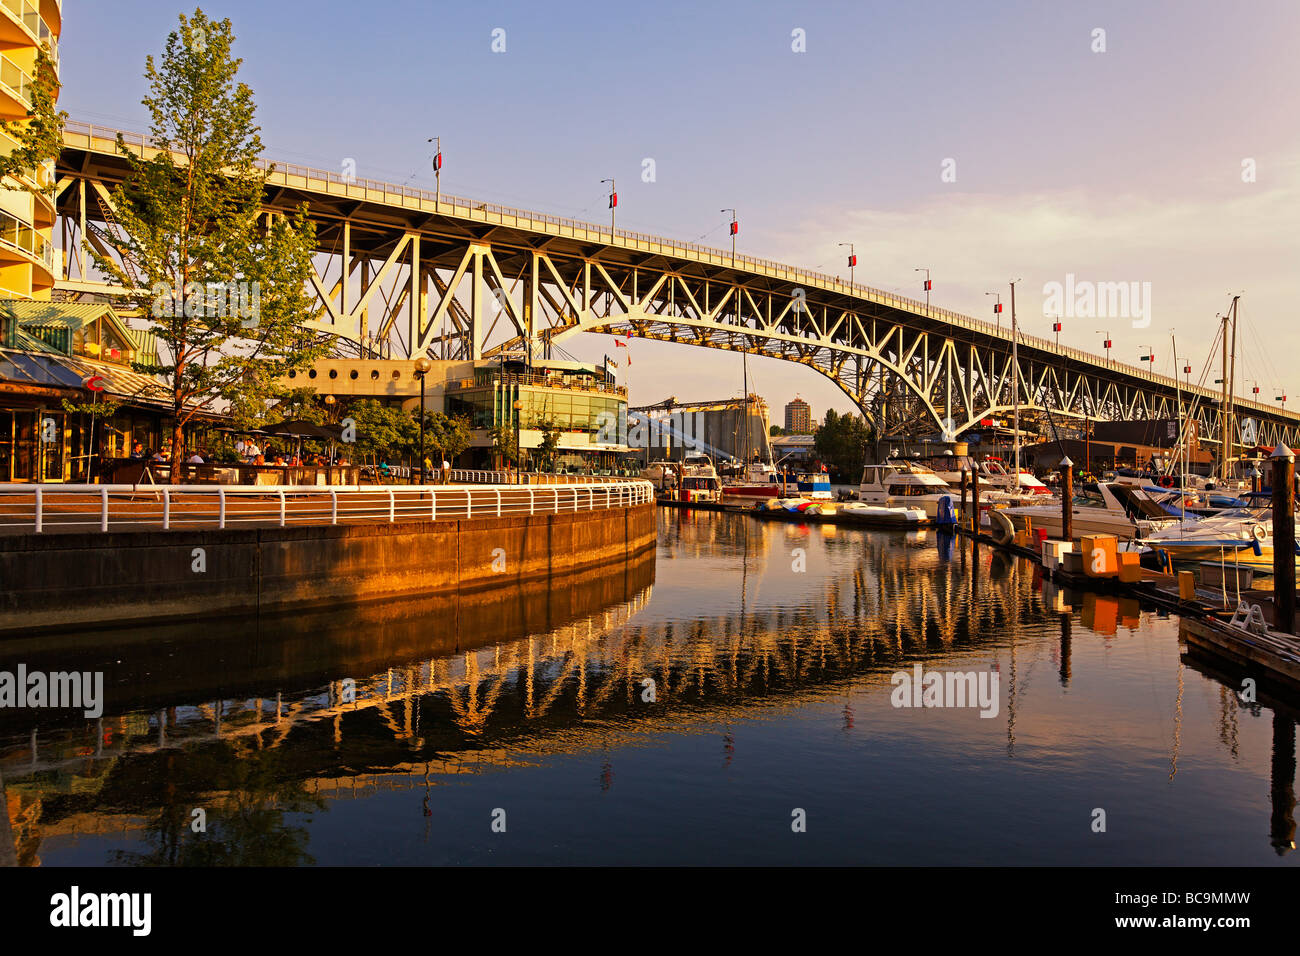 Promande and small Marina at False Creek Granville Bridge Vancouver Canada North America Stock Photo